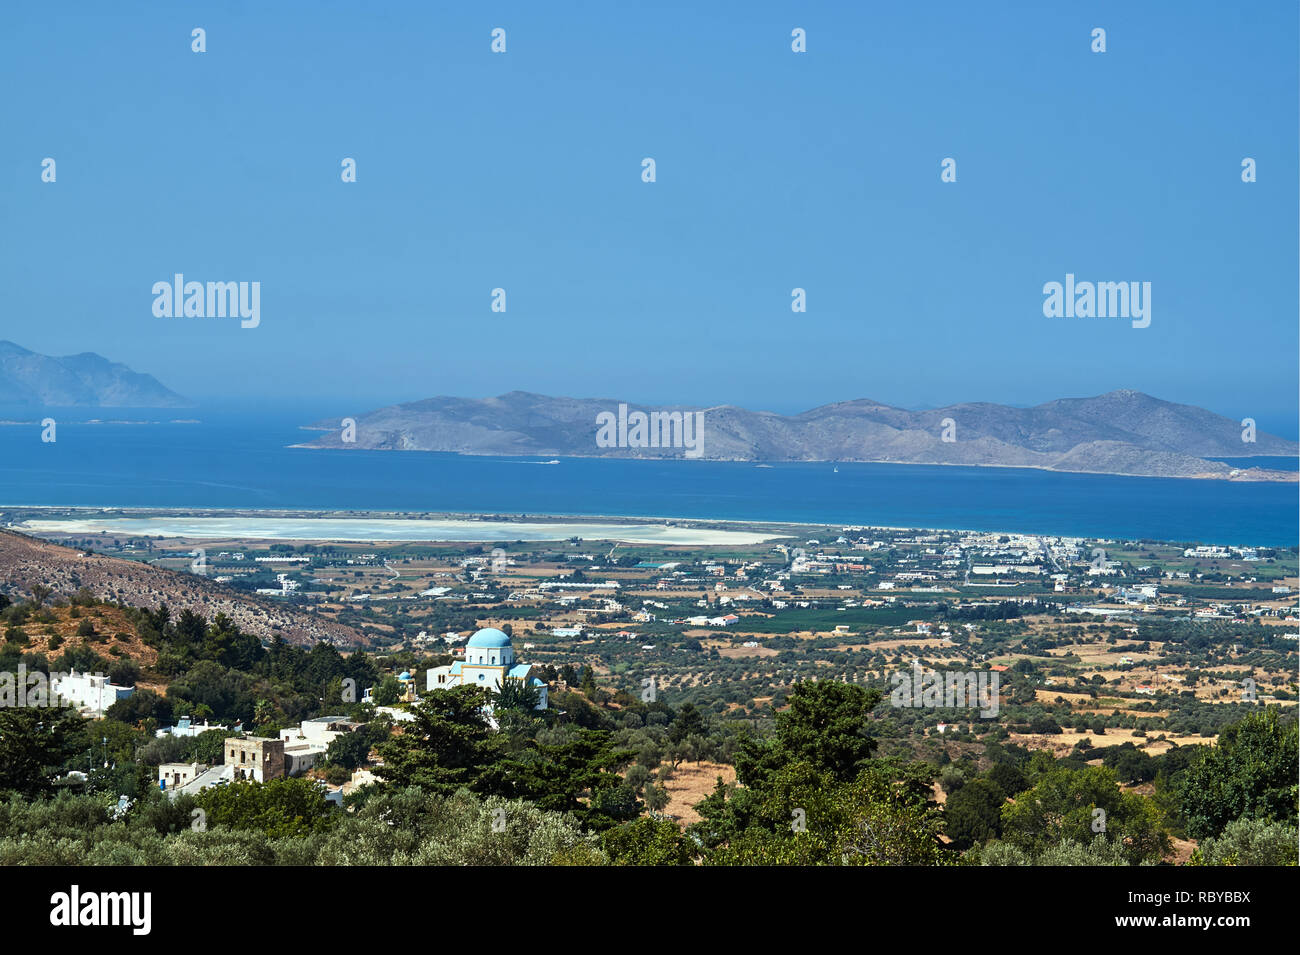 Orthodoxe Kirche und Salt Lake Alikes an den Ufern des Mittelmeers auf der Insel Kos in Griechenland Stockfoto